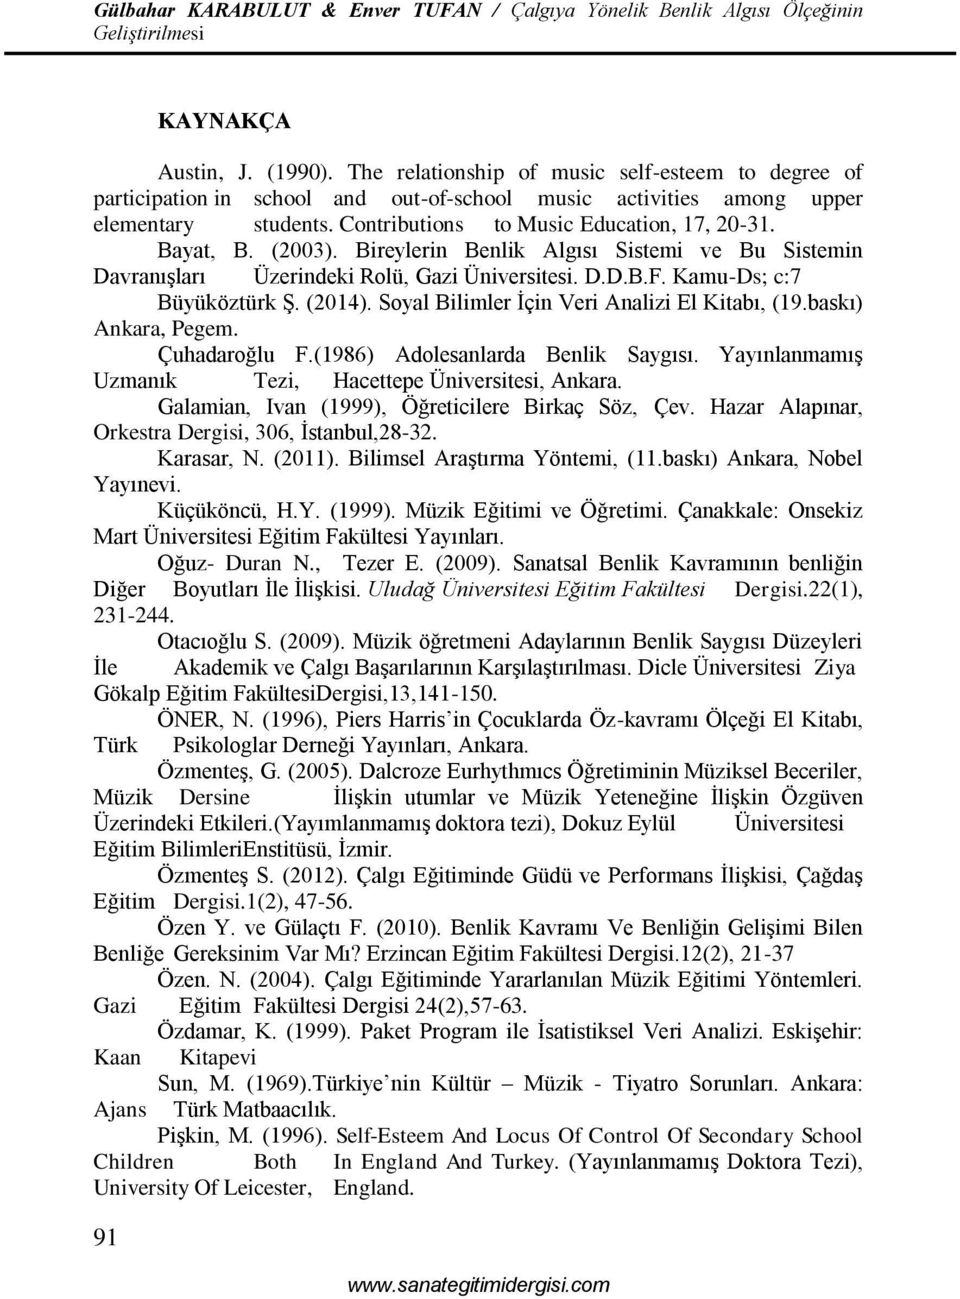 (2014). Soyal Bilimler İçin Veri Analizi El Kitabı, (19.baskı) Ankara, Pegem. Çuhadaroğlu F.(1986) Adolesanlarda Benlik Saygısı. Yayınlanmamış Uzmanık Tezi, Hacettepe Üniversitesi, Ankara.